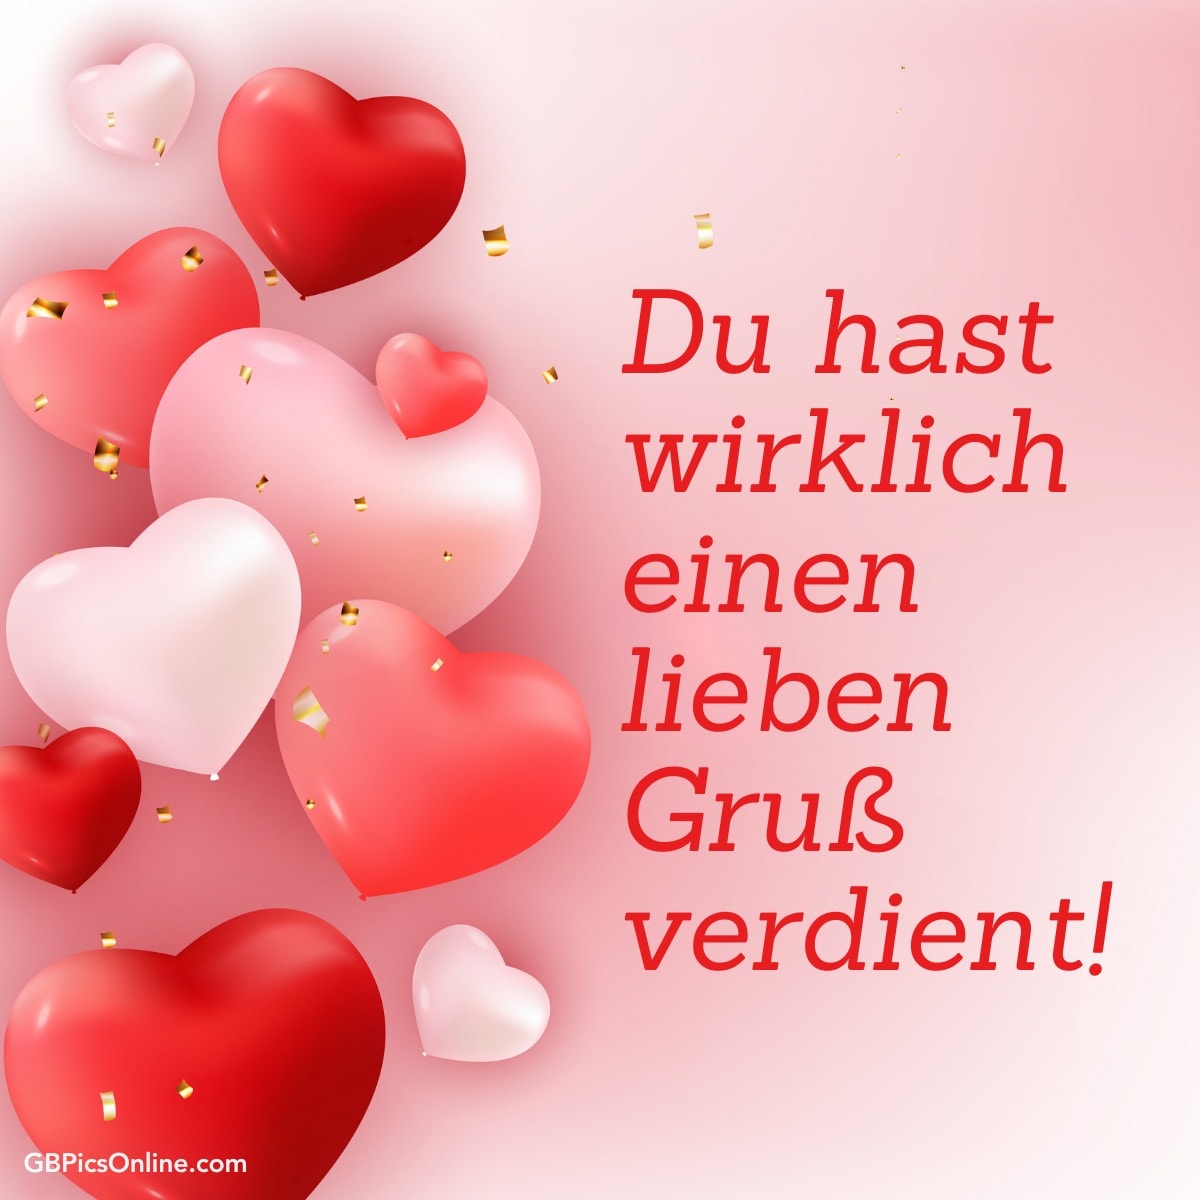 Rote und rosa Herzen mit dem Text „Du hast wirklich einen lieben Gruß verdient!“